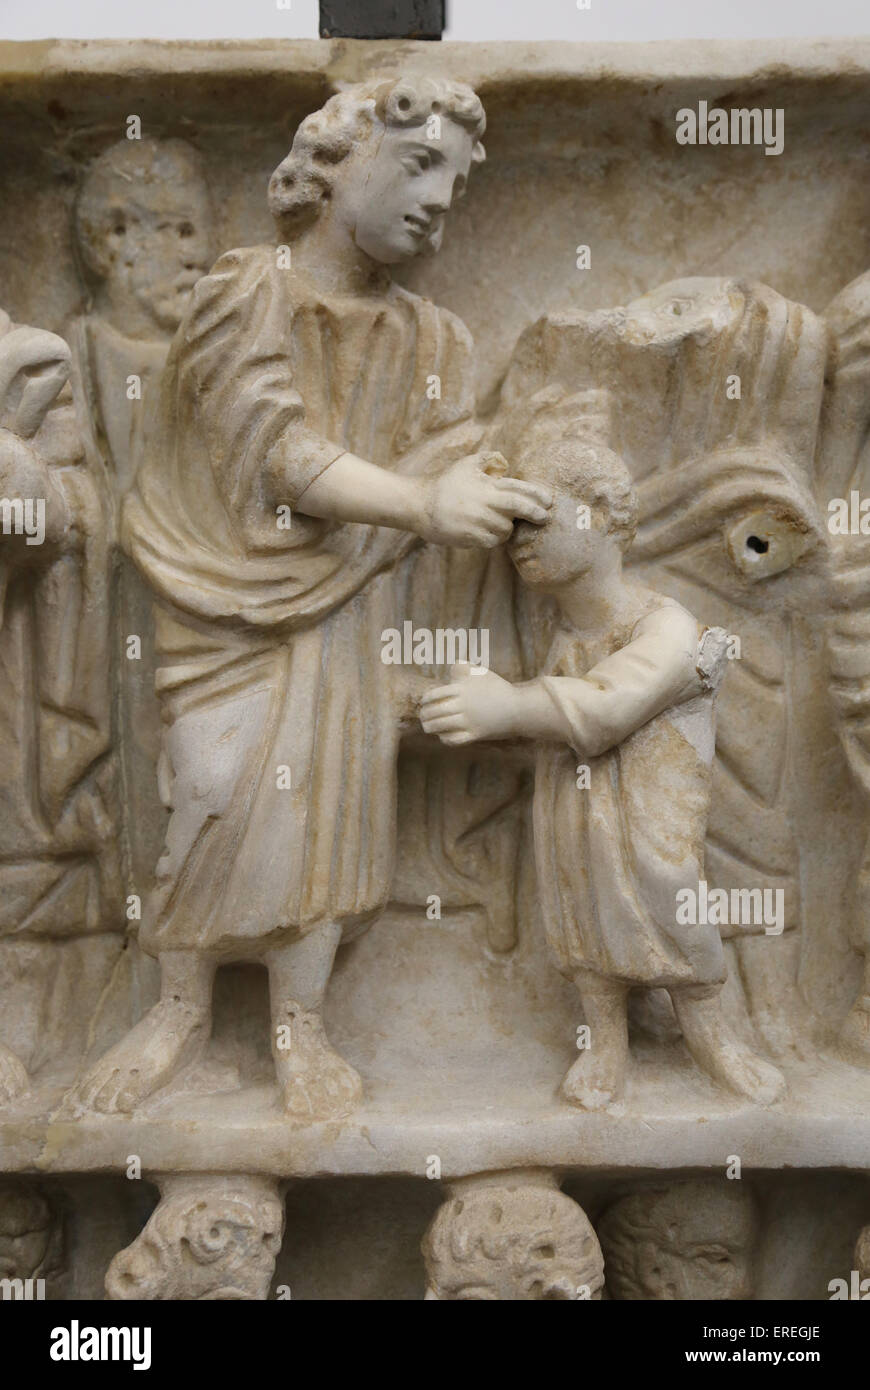 Sarcofago romano. Dei primi cristiani. 4° C. Dettaglio. Gesù che guarisce cieco. Musei Vaticani. Lo Stato della Città del Vaticano. Foto Stock